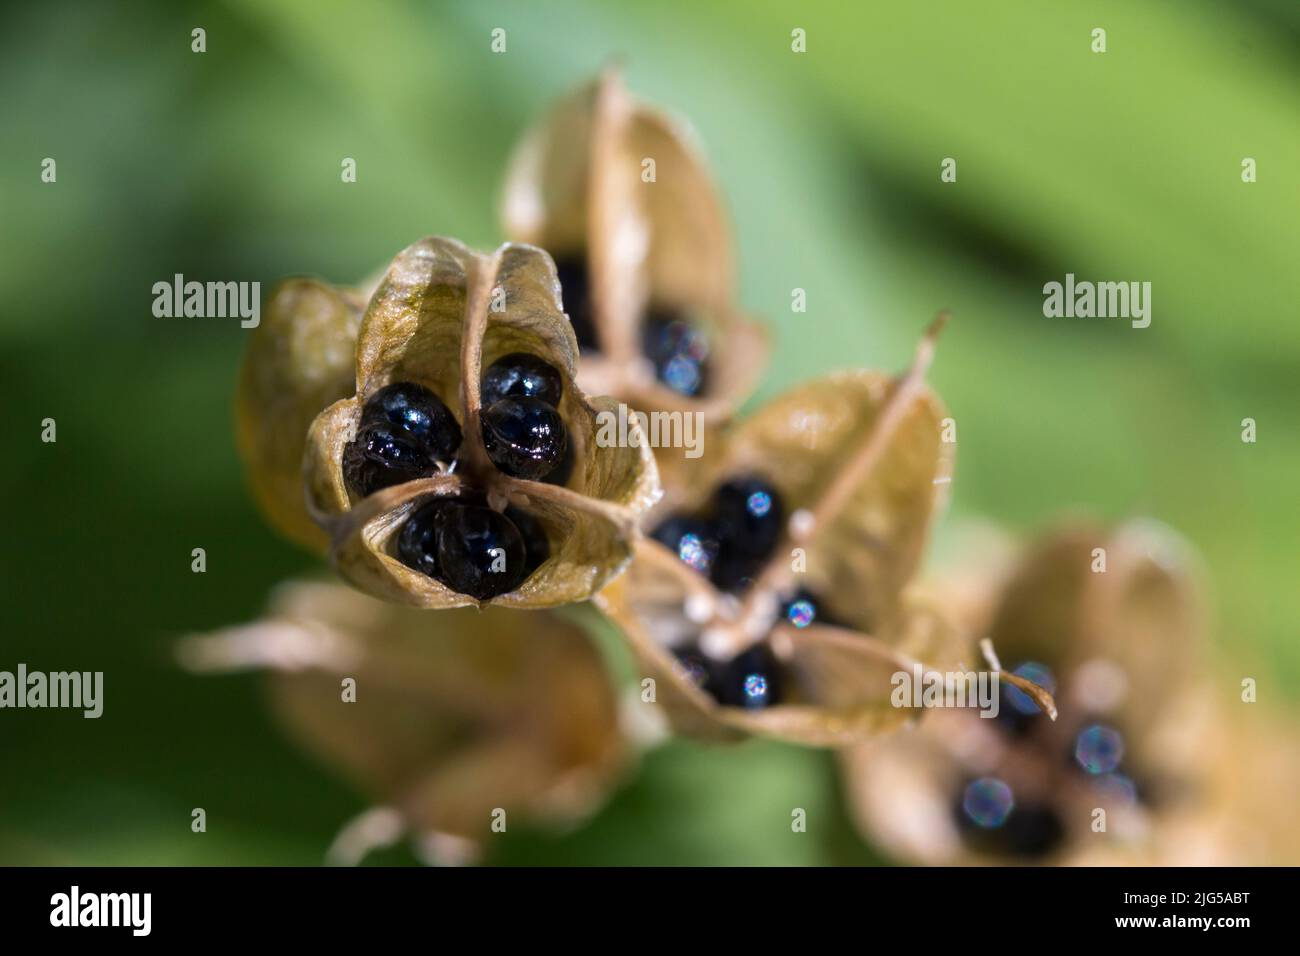 Spanische Bluebell-Samen in papierigen, hellbraunen, dreifachen Hülsen glänzend schwarze, gerundete Samen in getrockneten, translusscent geformten Hülsen, aufgeteilt in drei Zellen mit jeweils Samen Stockfoto